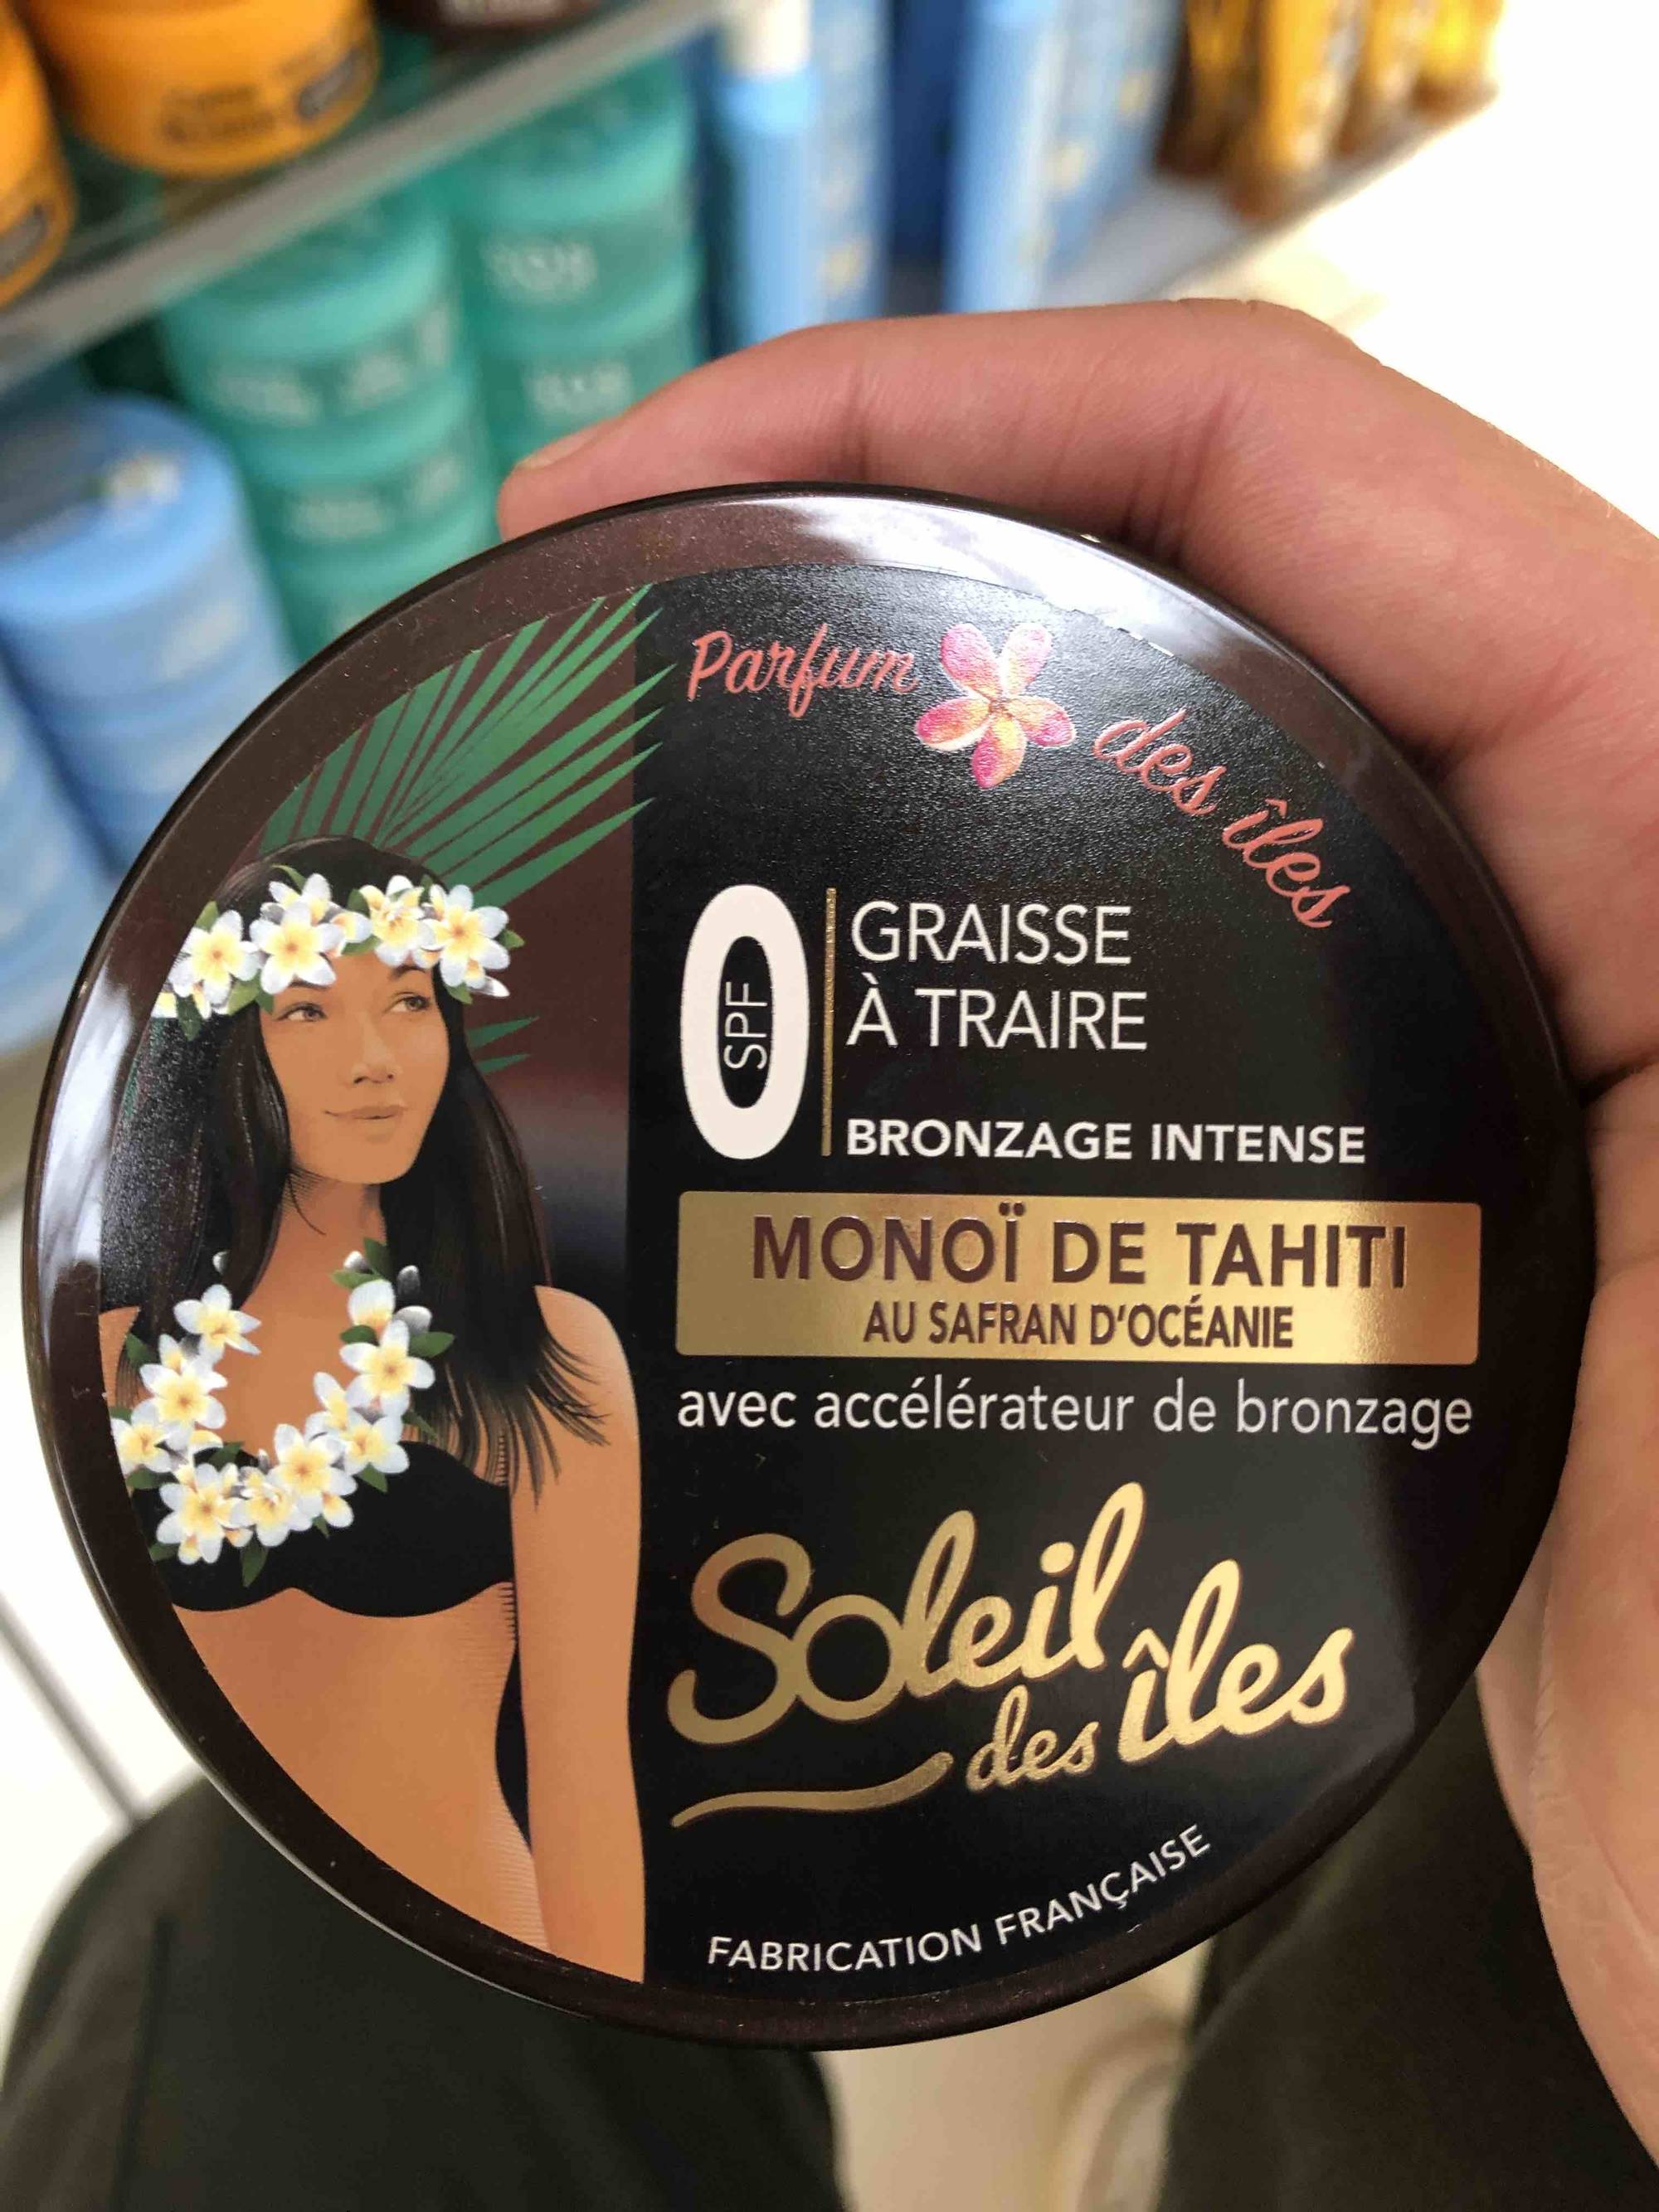 SOLEIL DES ILES - Monoï de Tahiti - Graisse à traire spf 0 bronzage intense